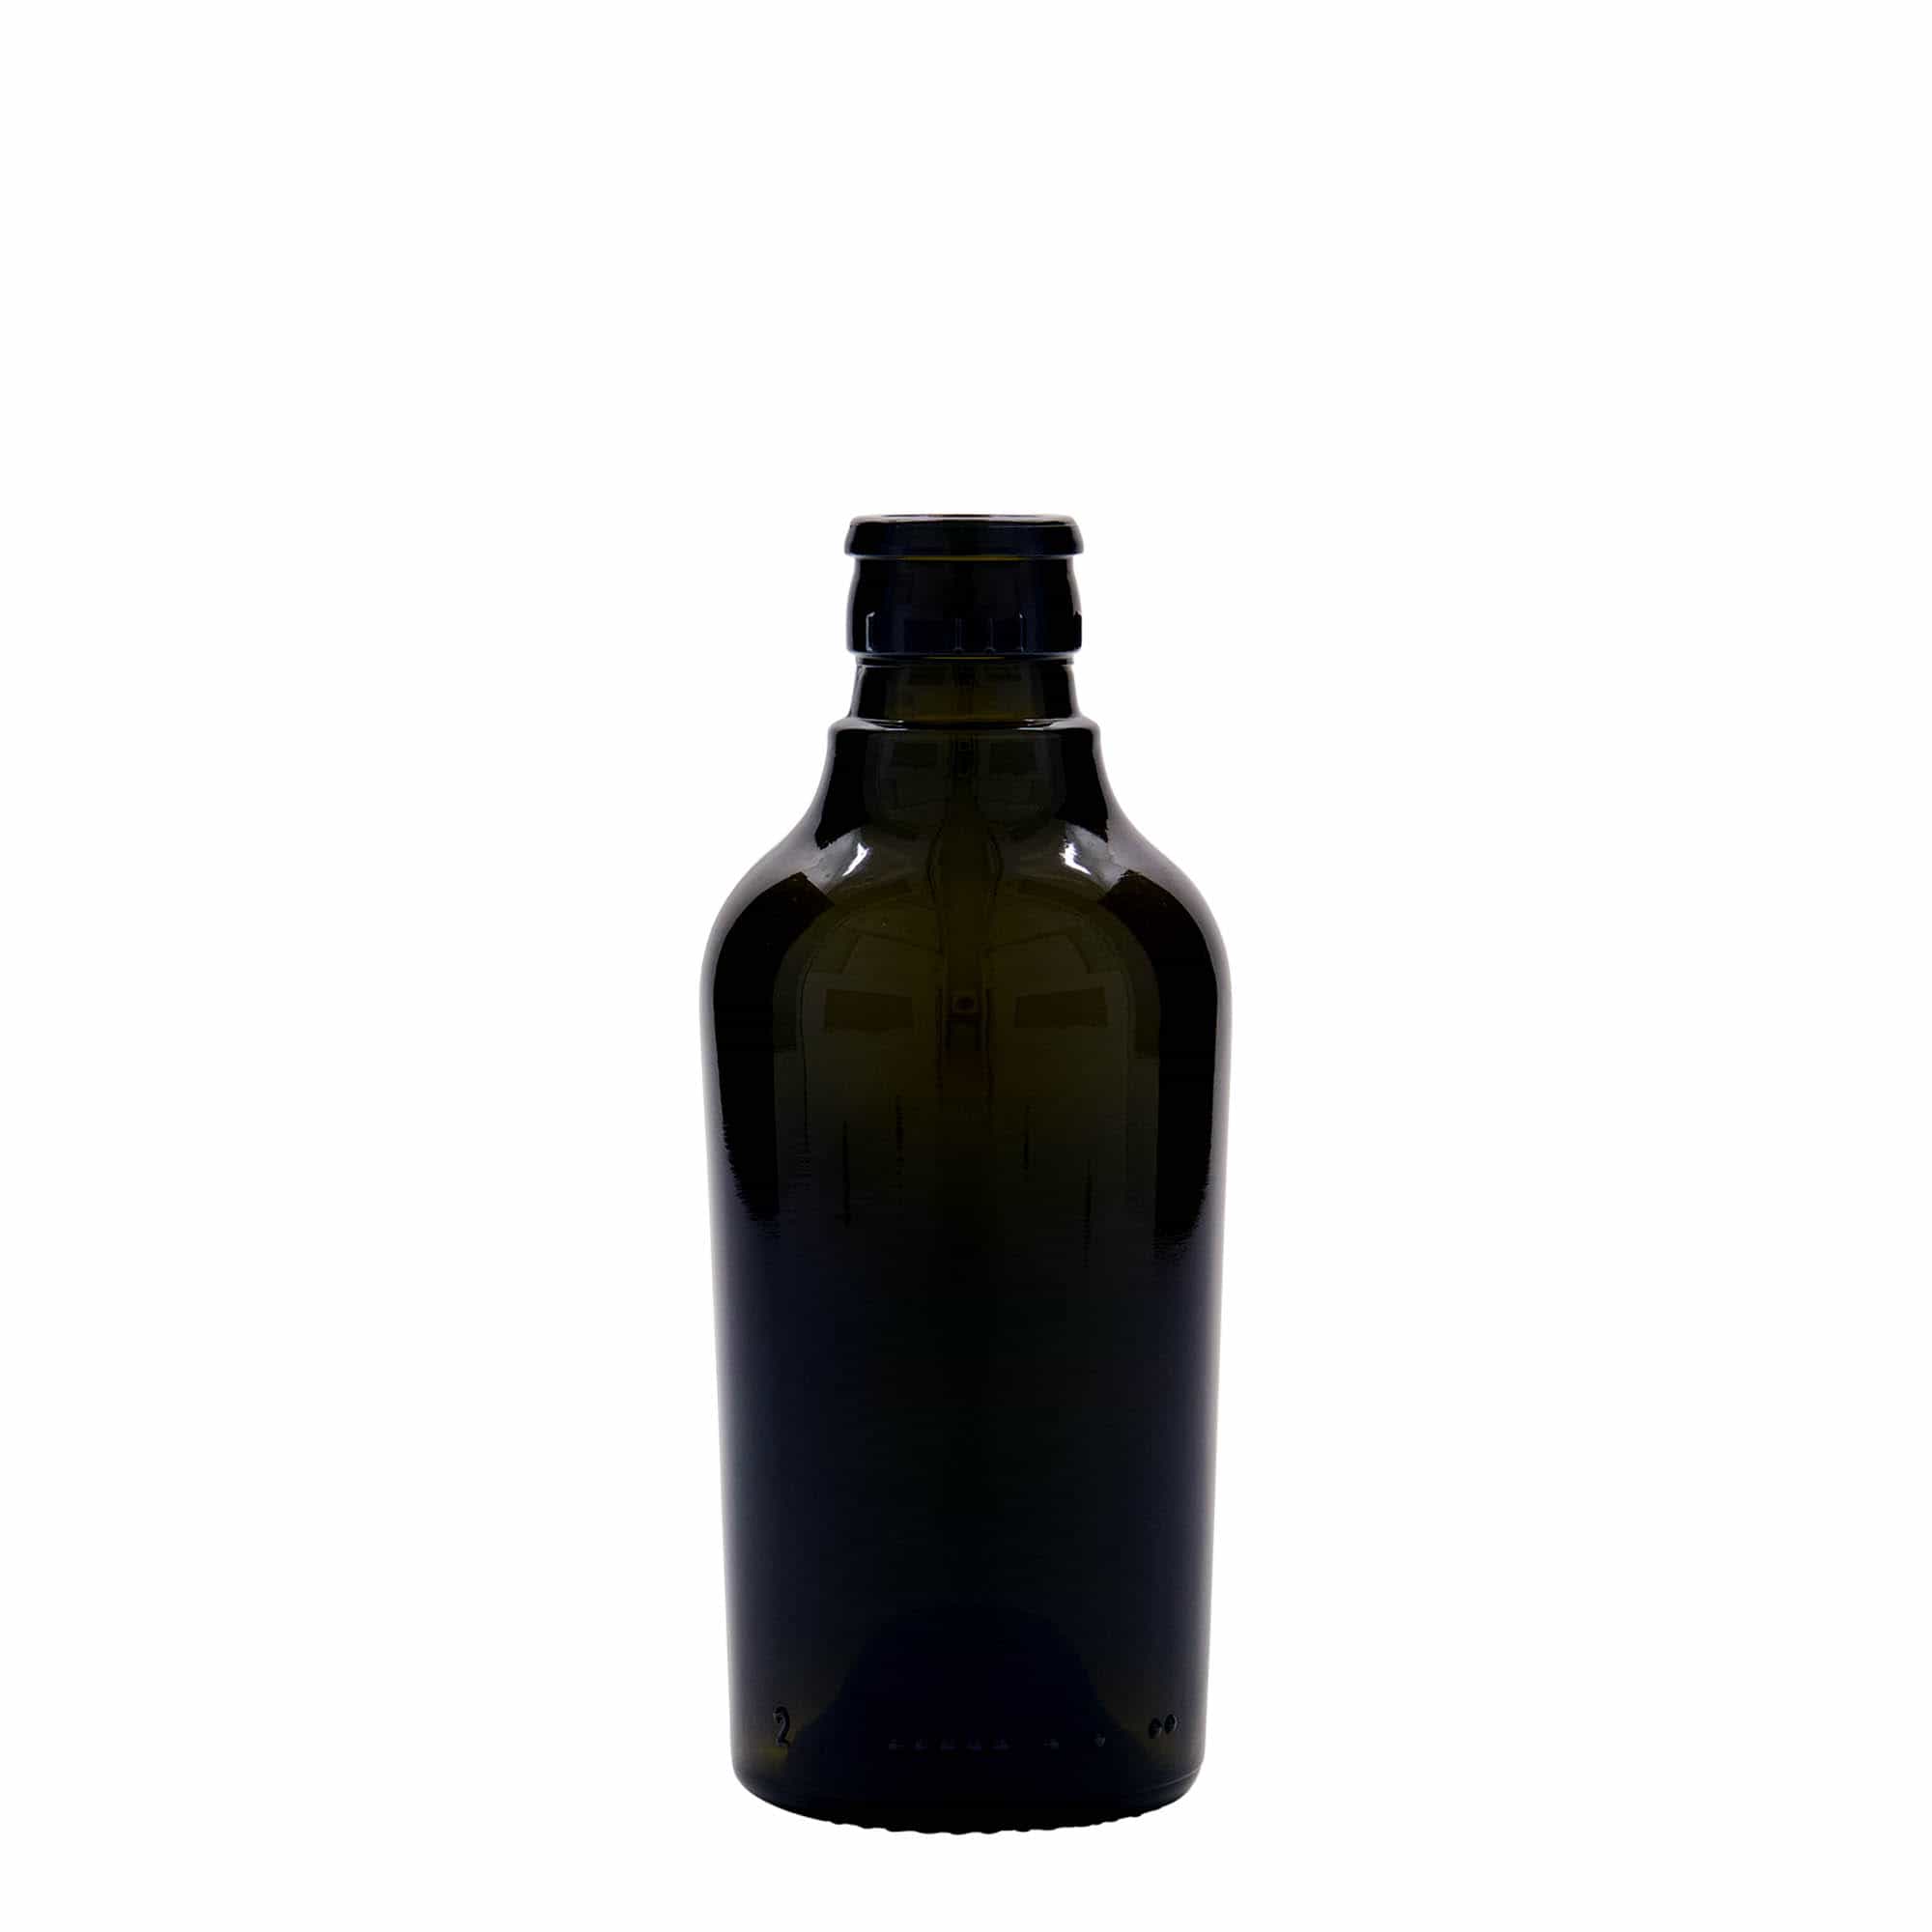 250 ml butelka na ocet/olej 'Oleum', szkło, kolor zielony antyczny, zamknięcie: DOP